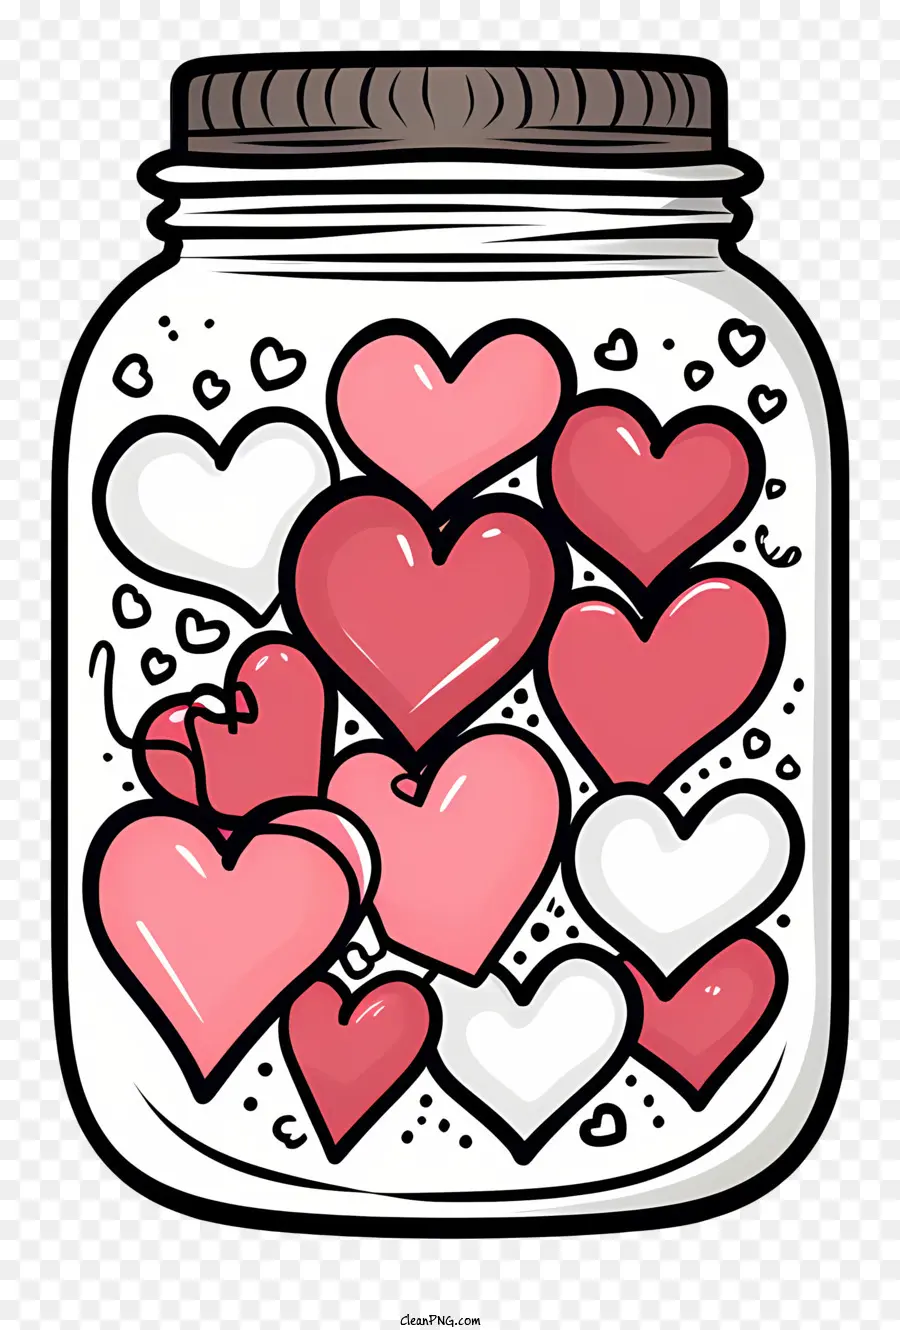 Mason Jar hình trái tim Mason Jar Pink Hearts Mason Jar Trang trí màu hồng và đỏ confetti - Bình mason hình trái tim với trái tim màu hồng